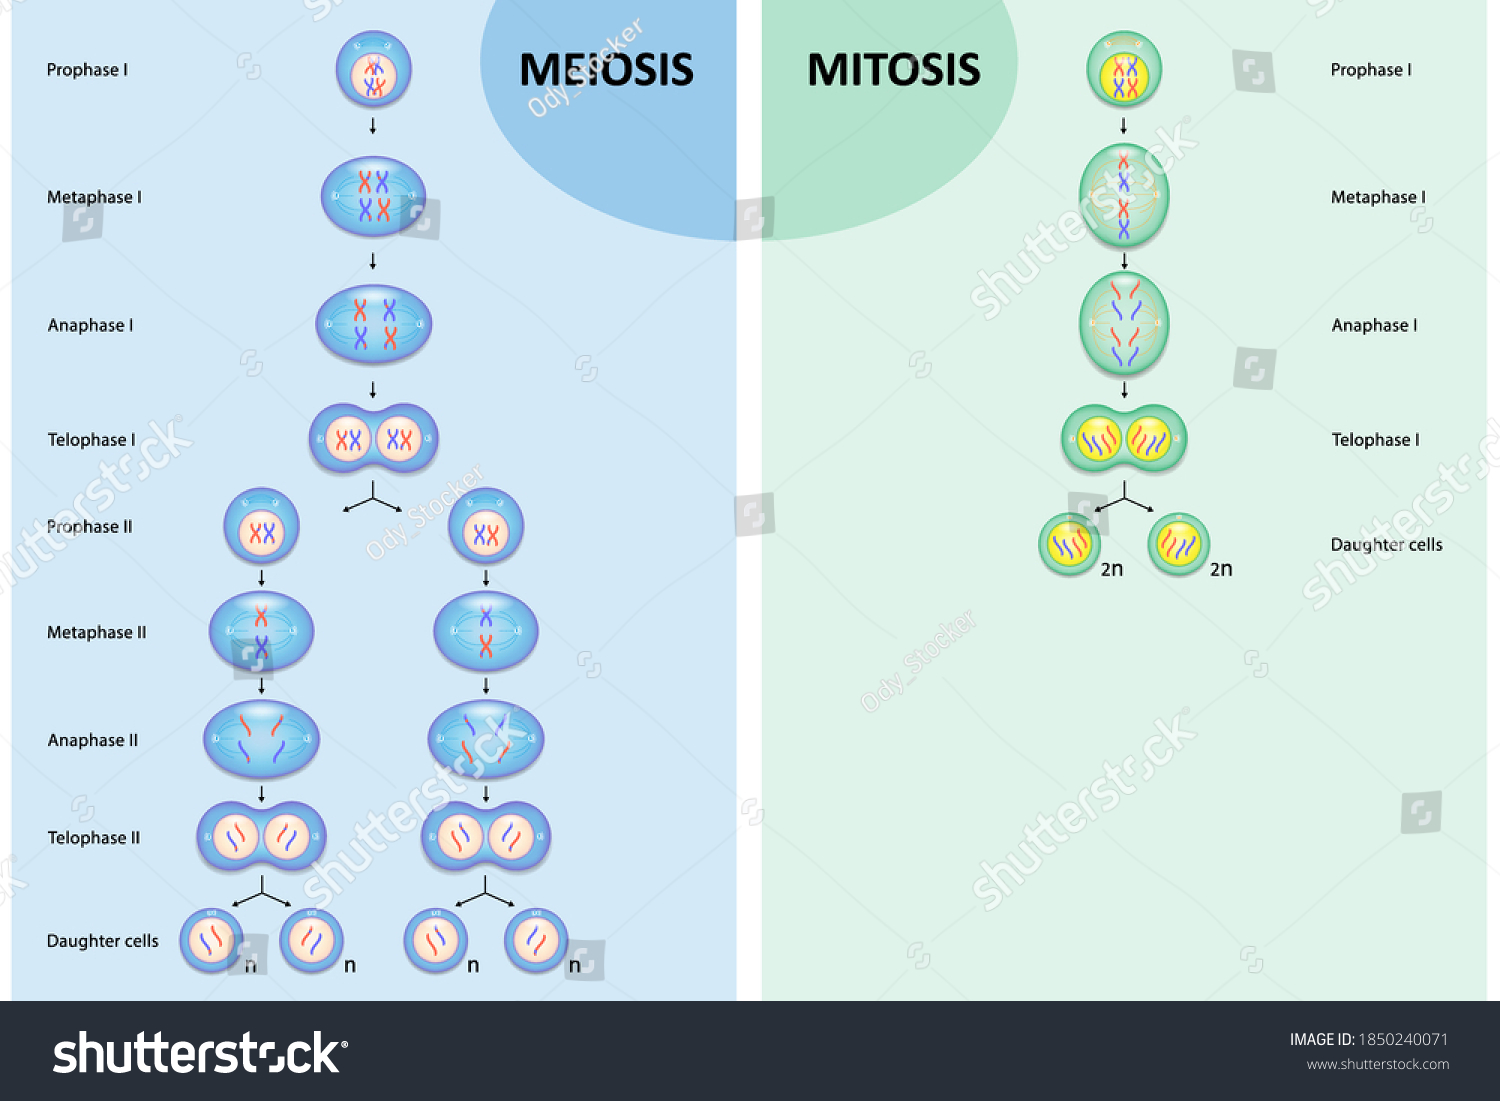 1049 Imágenes De Mitosis Y Meiosis Imágenes Fotos Y Vectores De Stock Shutterstock 8619